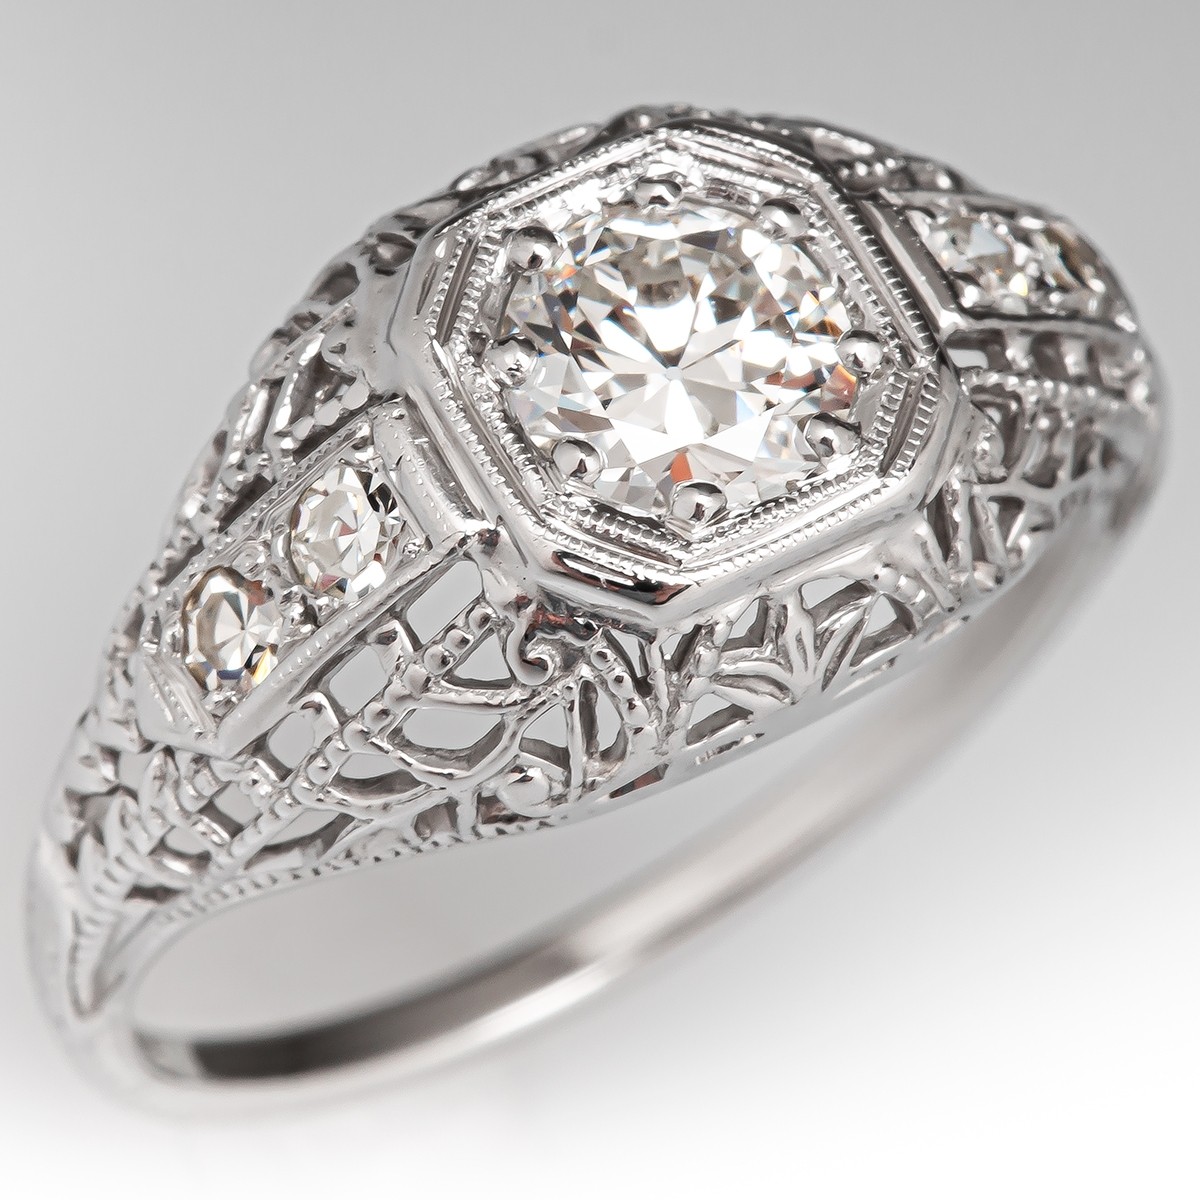 Antique 1930s Filigree Diamond Engagement Ring 18K White Gold